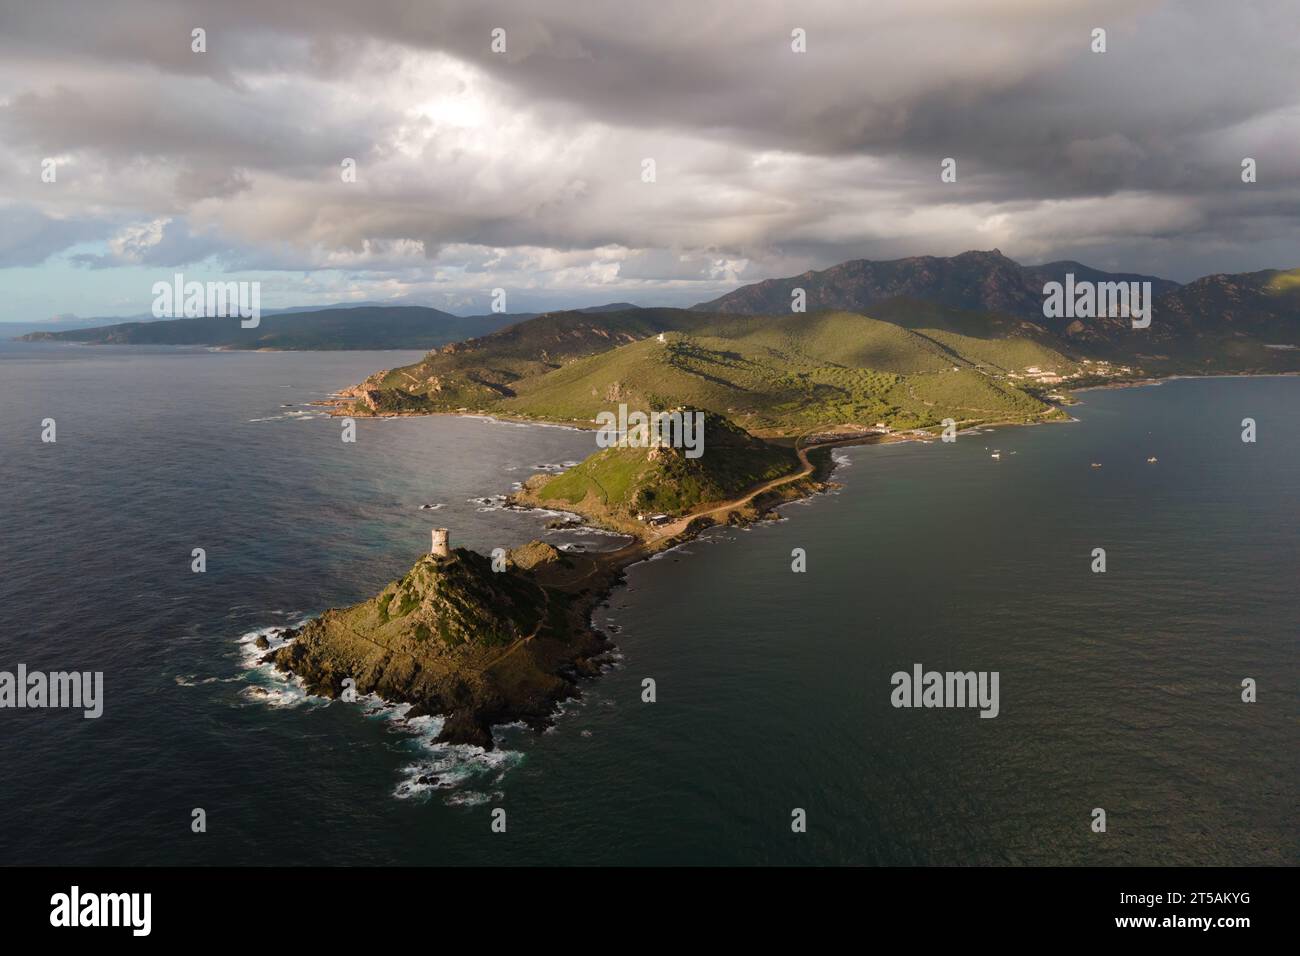 Vue aérienne de l'archipel des Sanguinaires, Corse, France. Banque D'Images